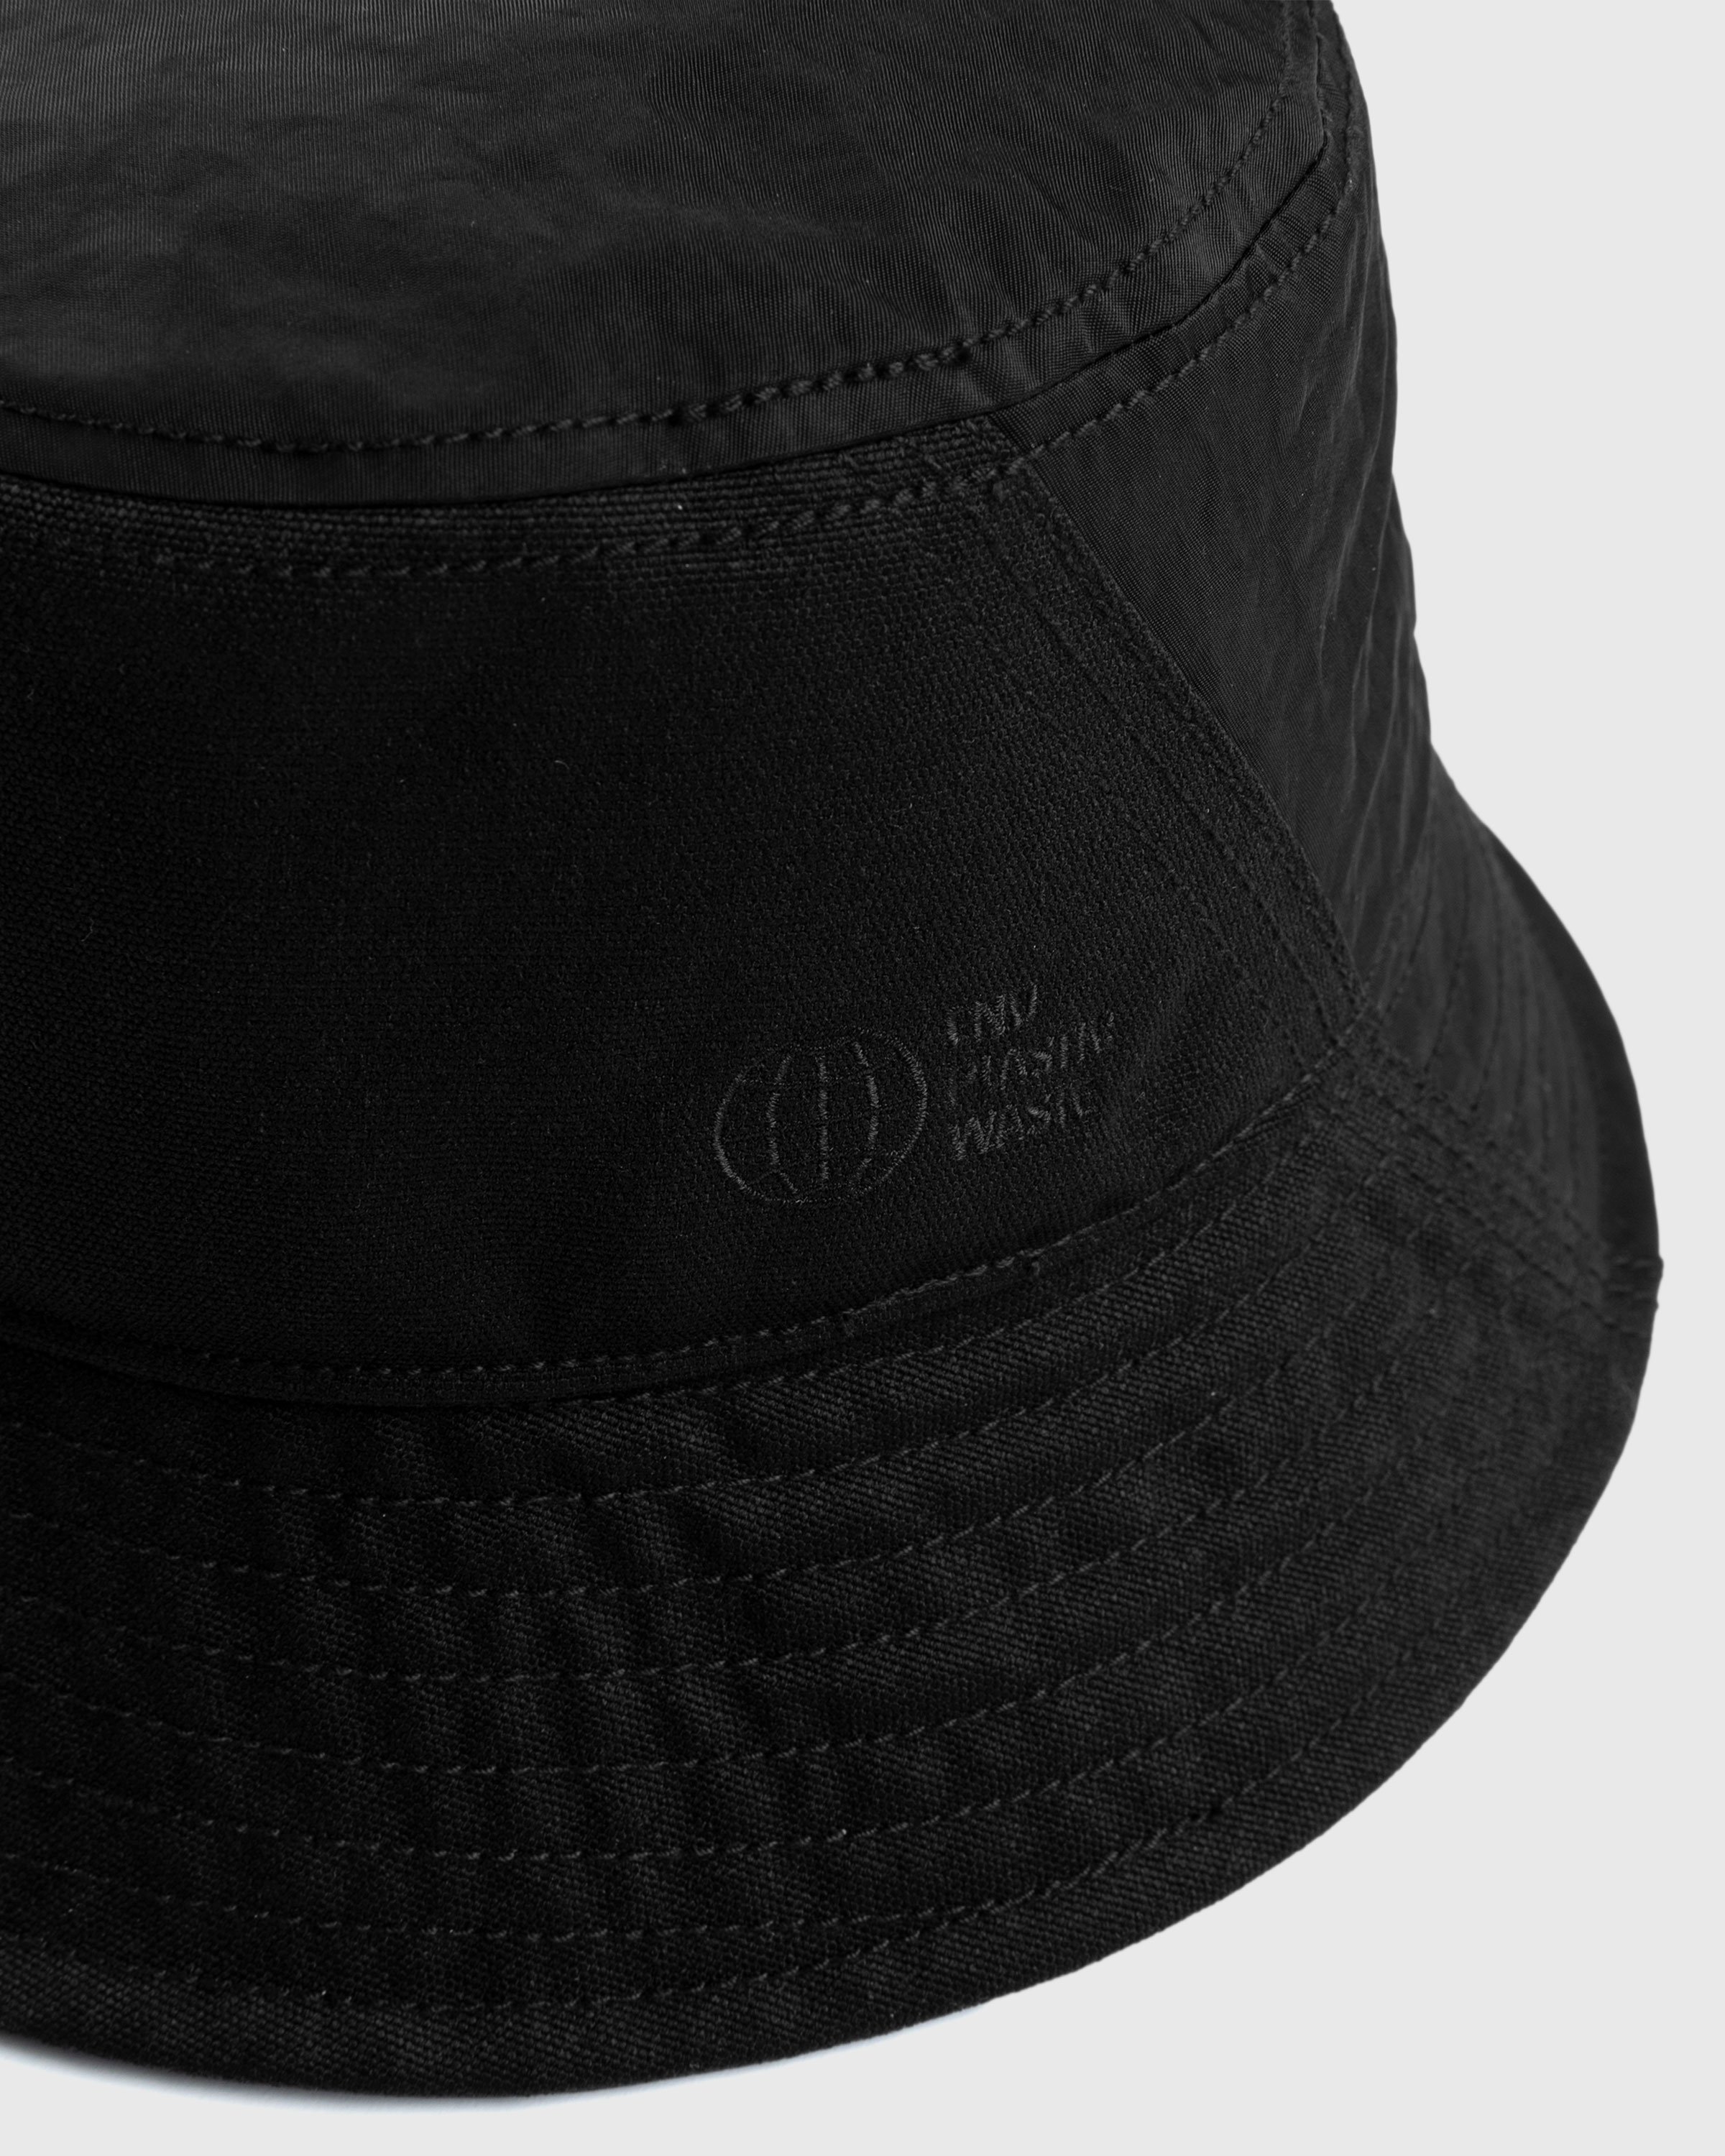 Y-3 - Bucket Hat Black - Accessories - Black - Image 4